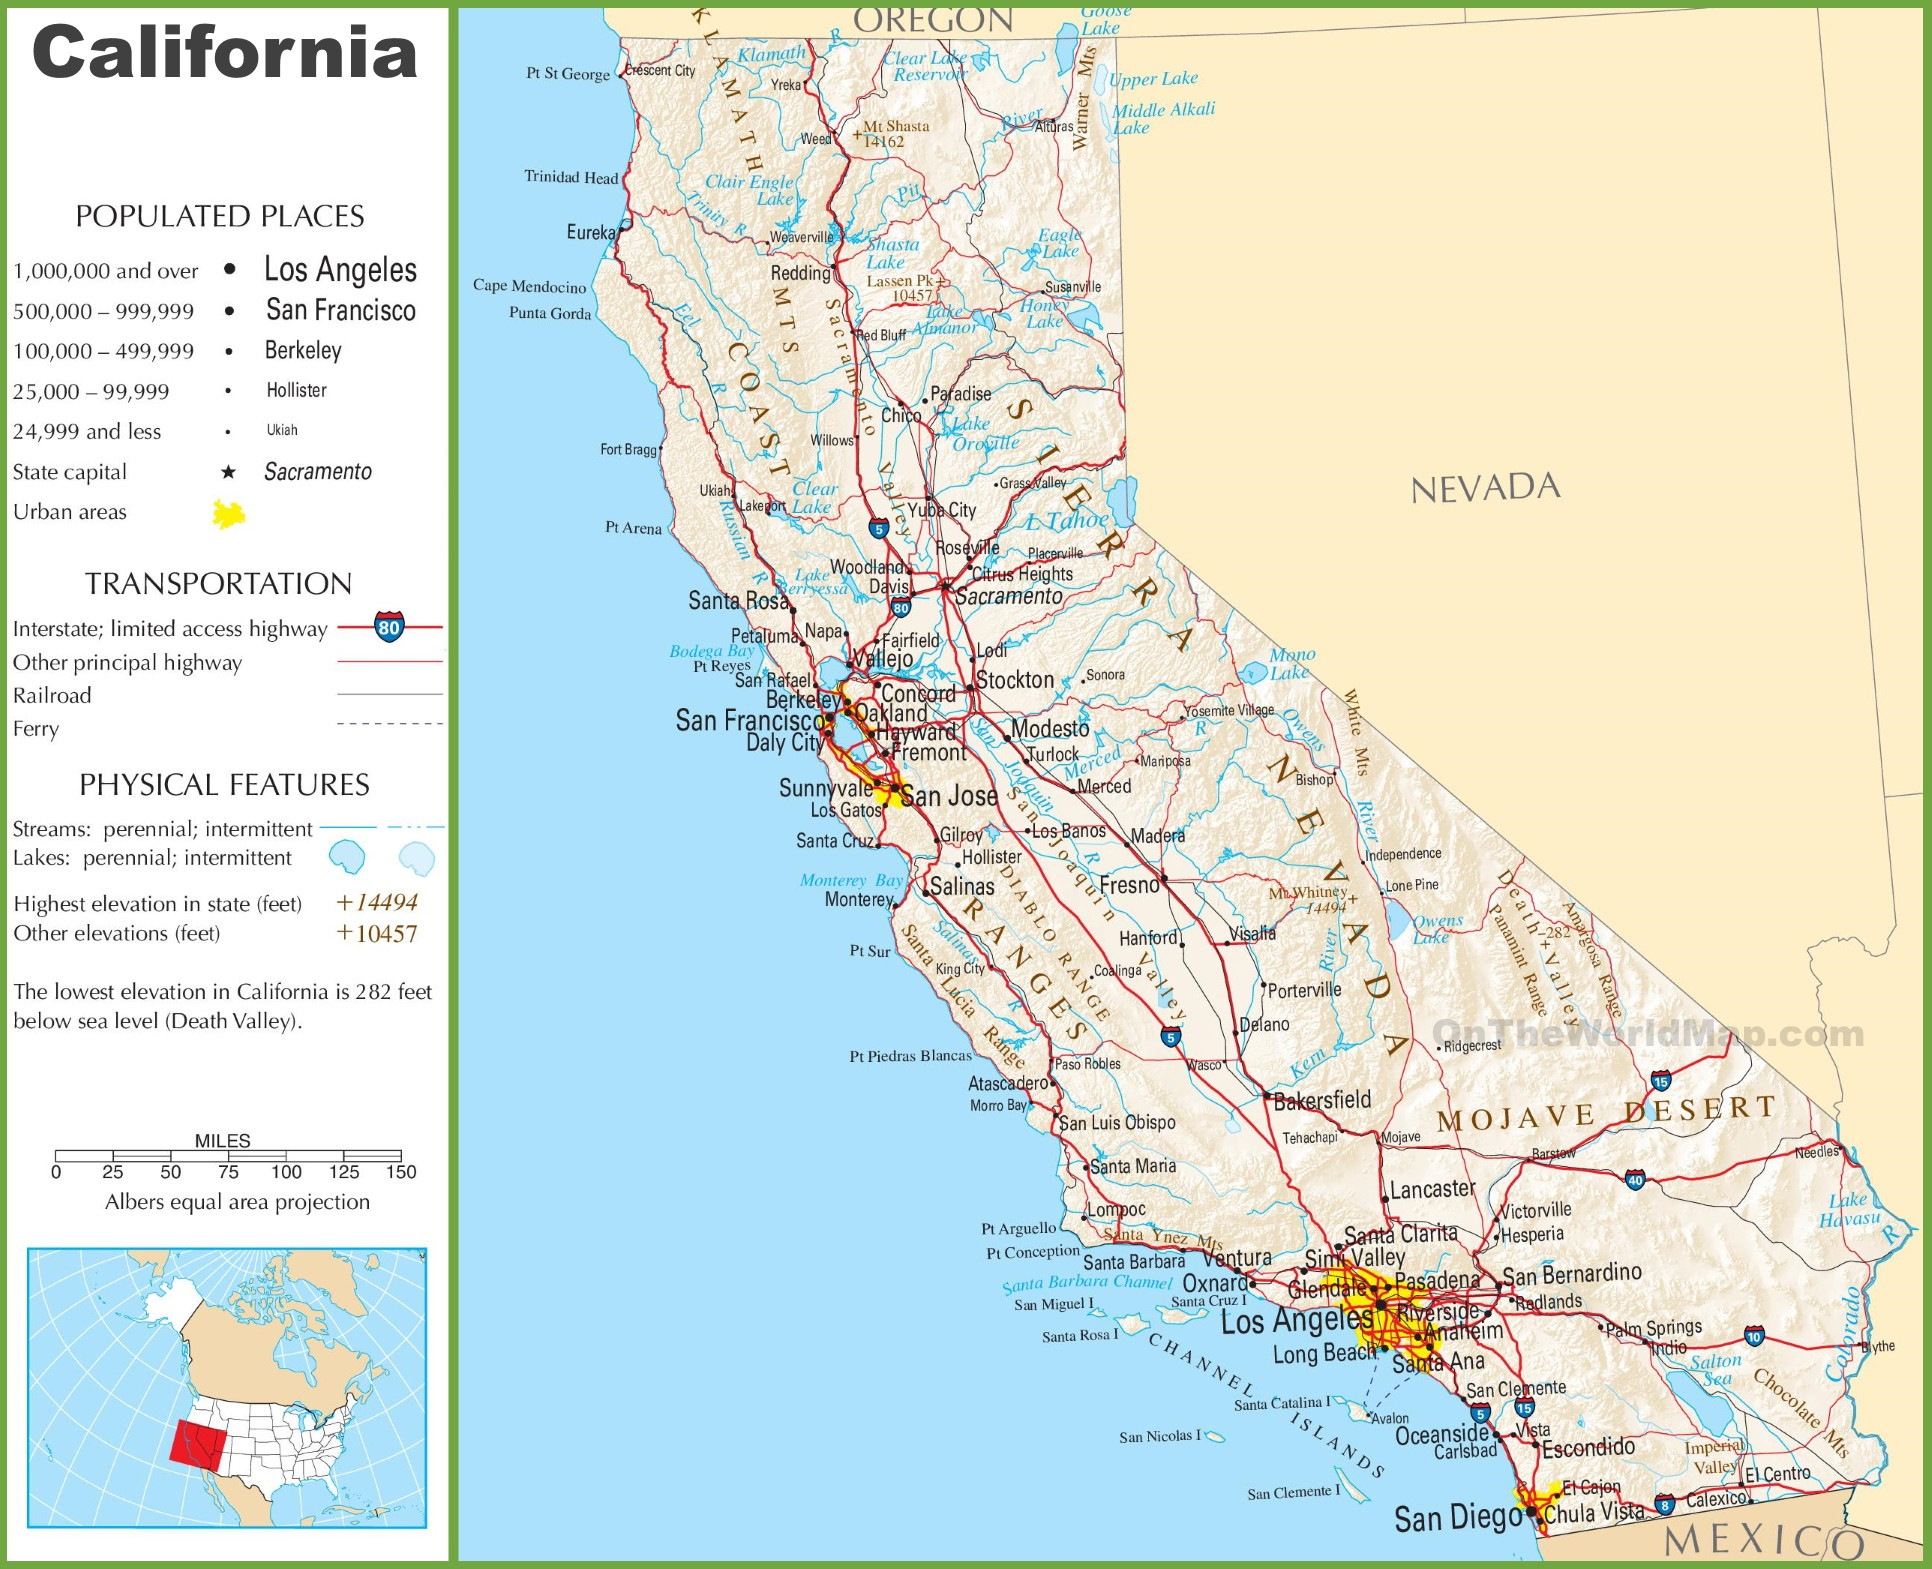 Map Of Calabasas California - Klipy - Calabasas California Map